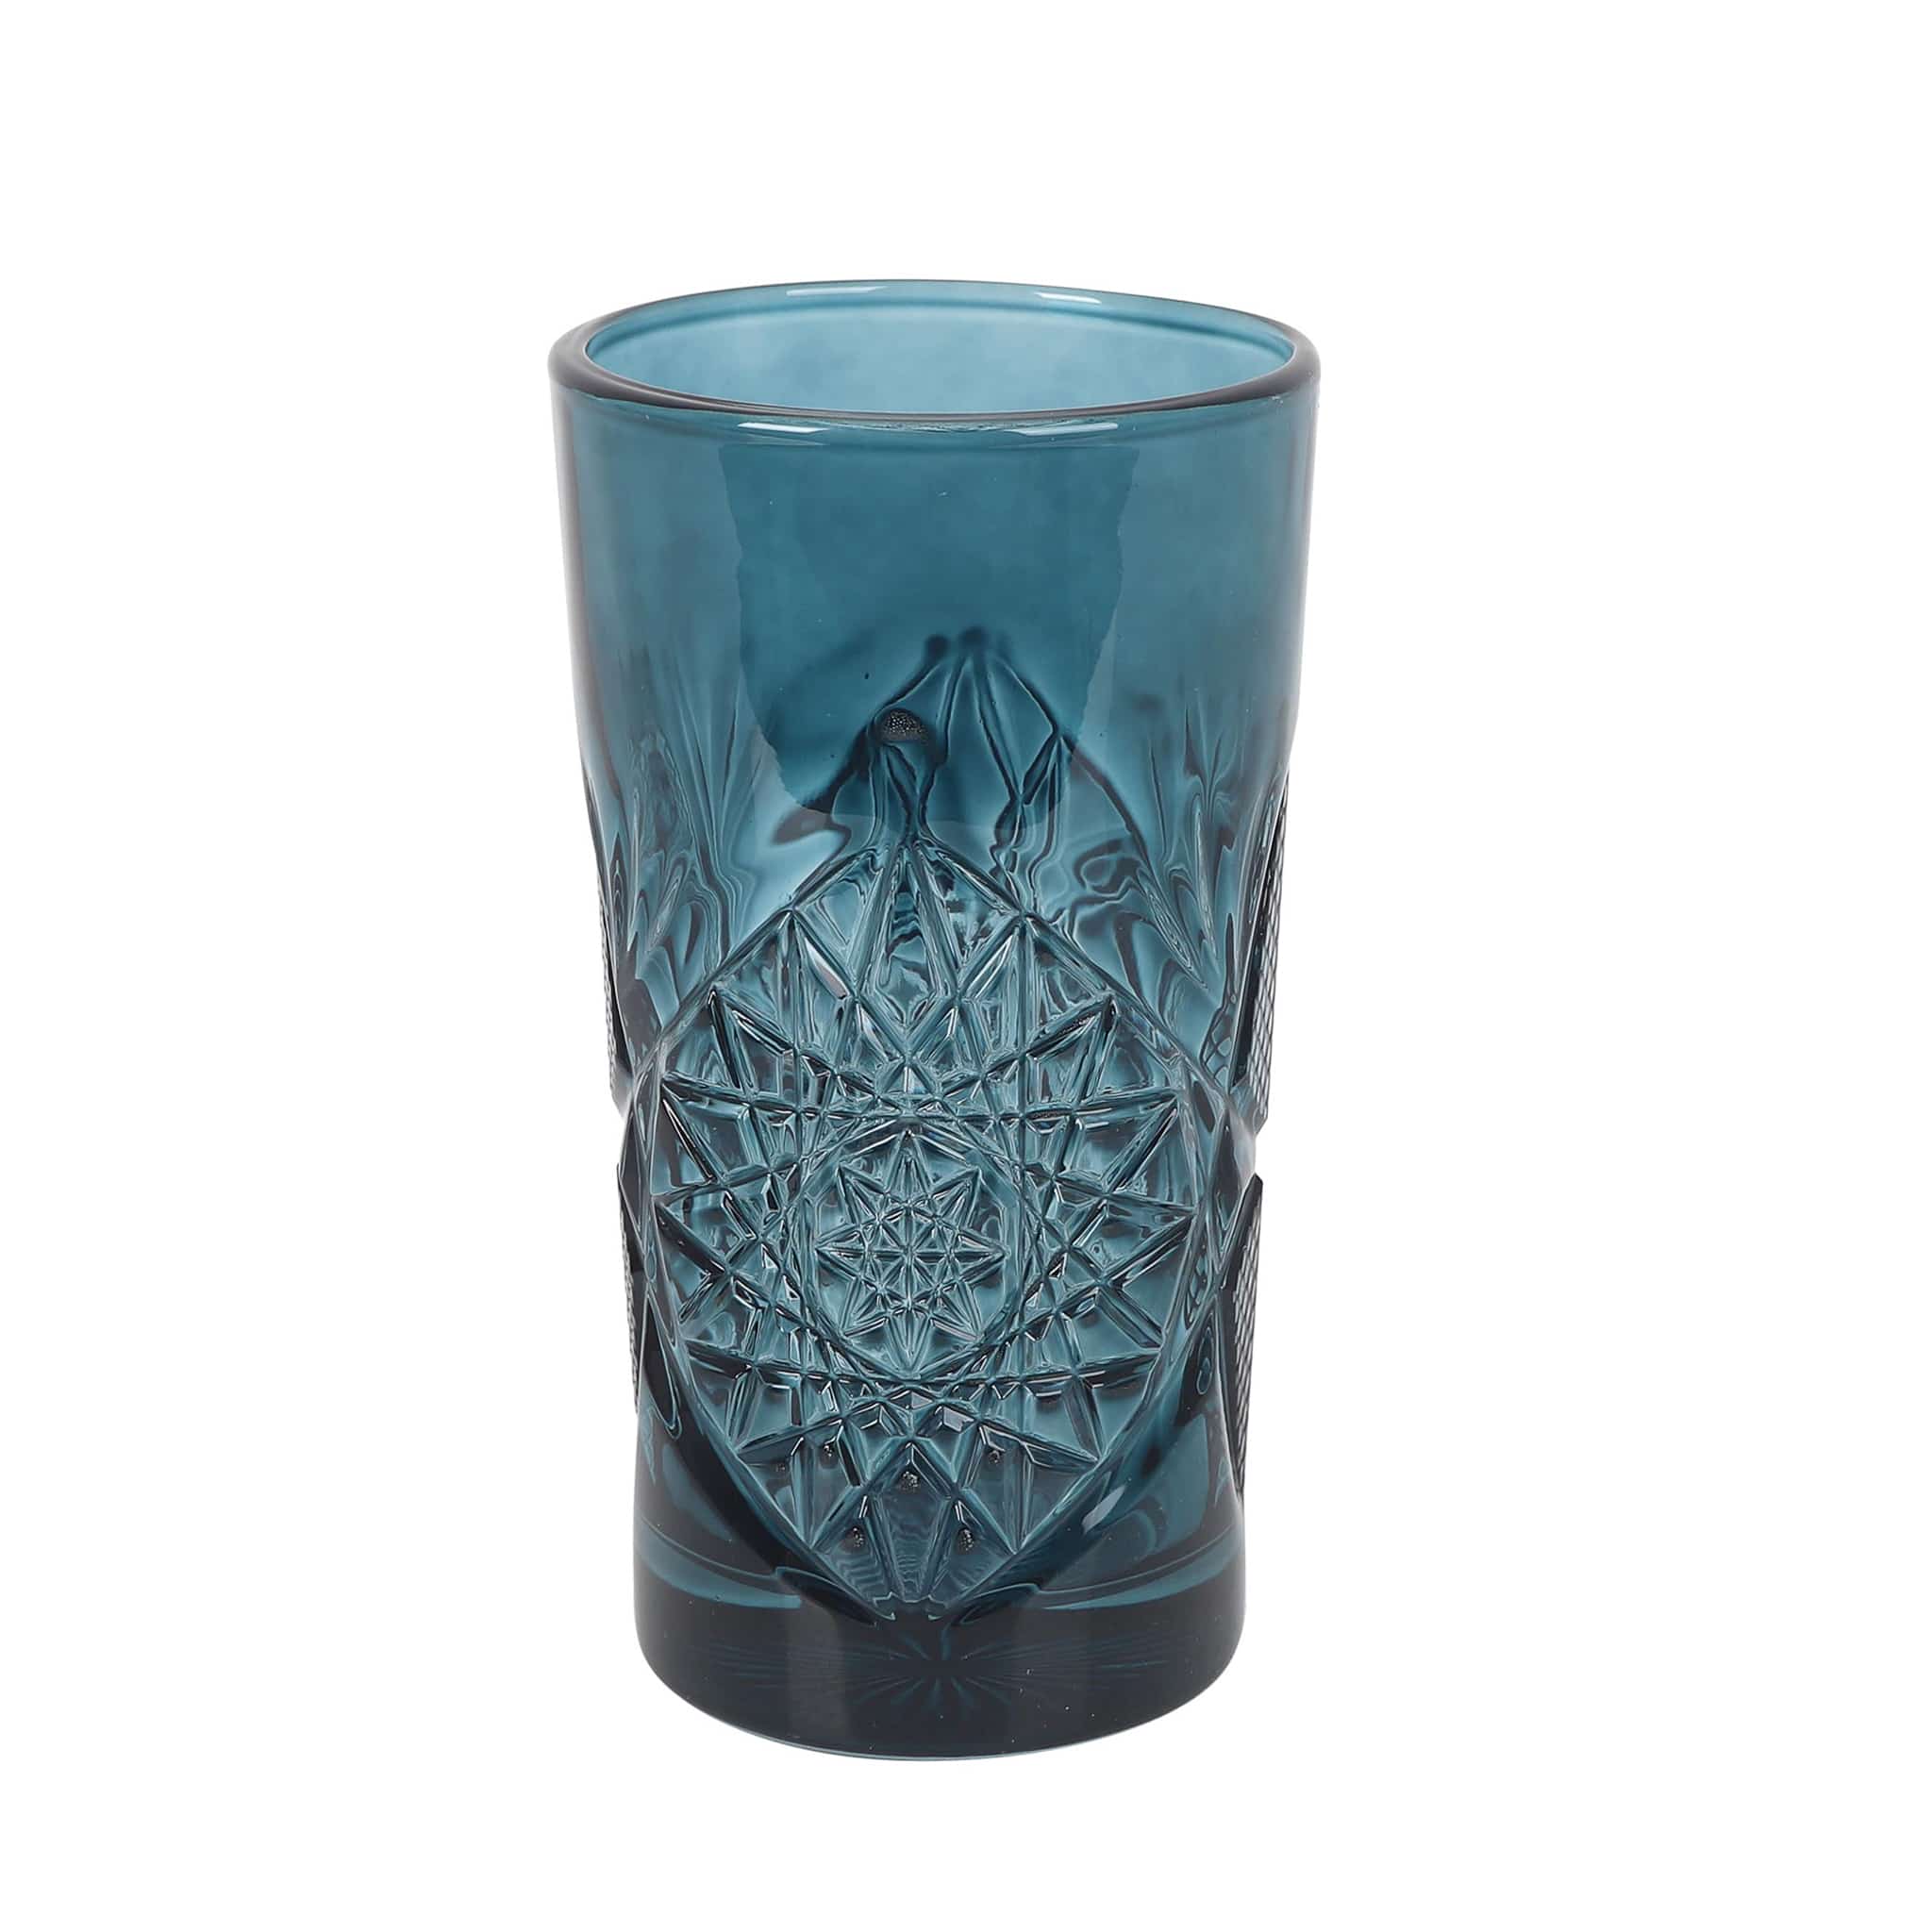 Set of 6 Blue Hobstar Highball Glasses, 350ml